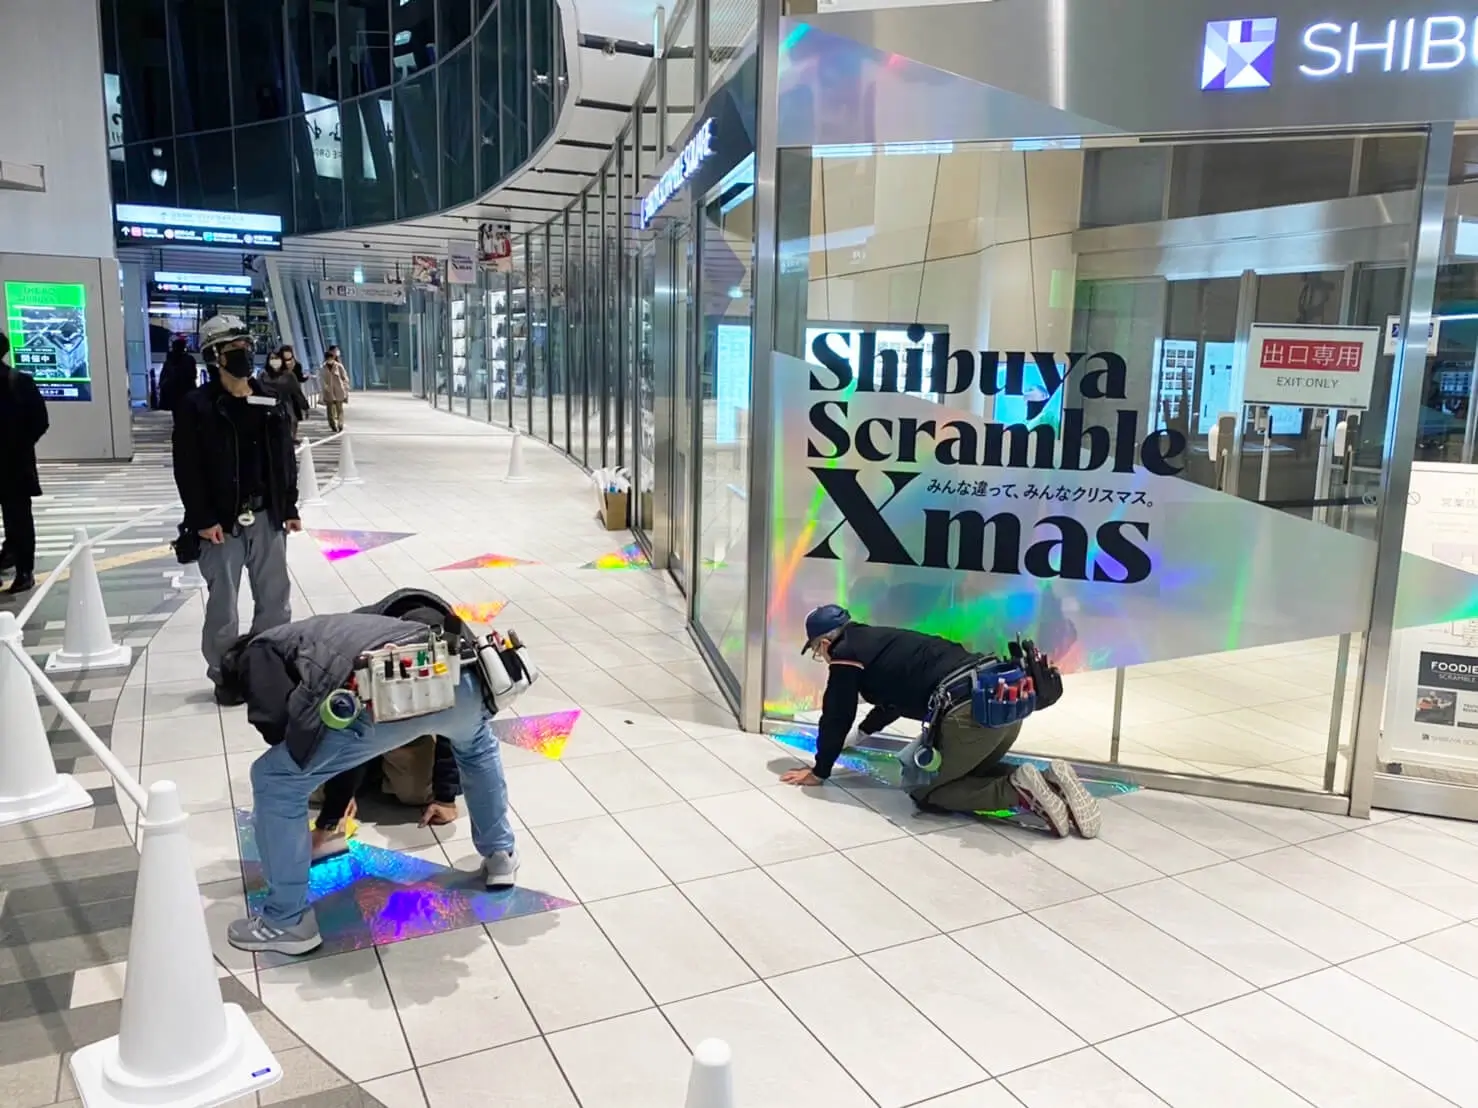 Shibuya Scramble Xmasテナントサイン工事